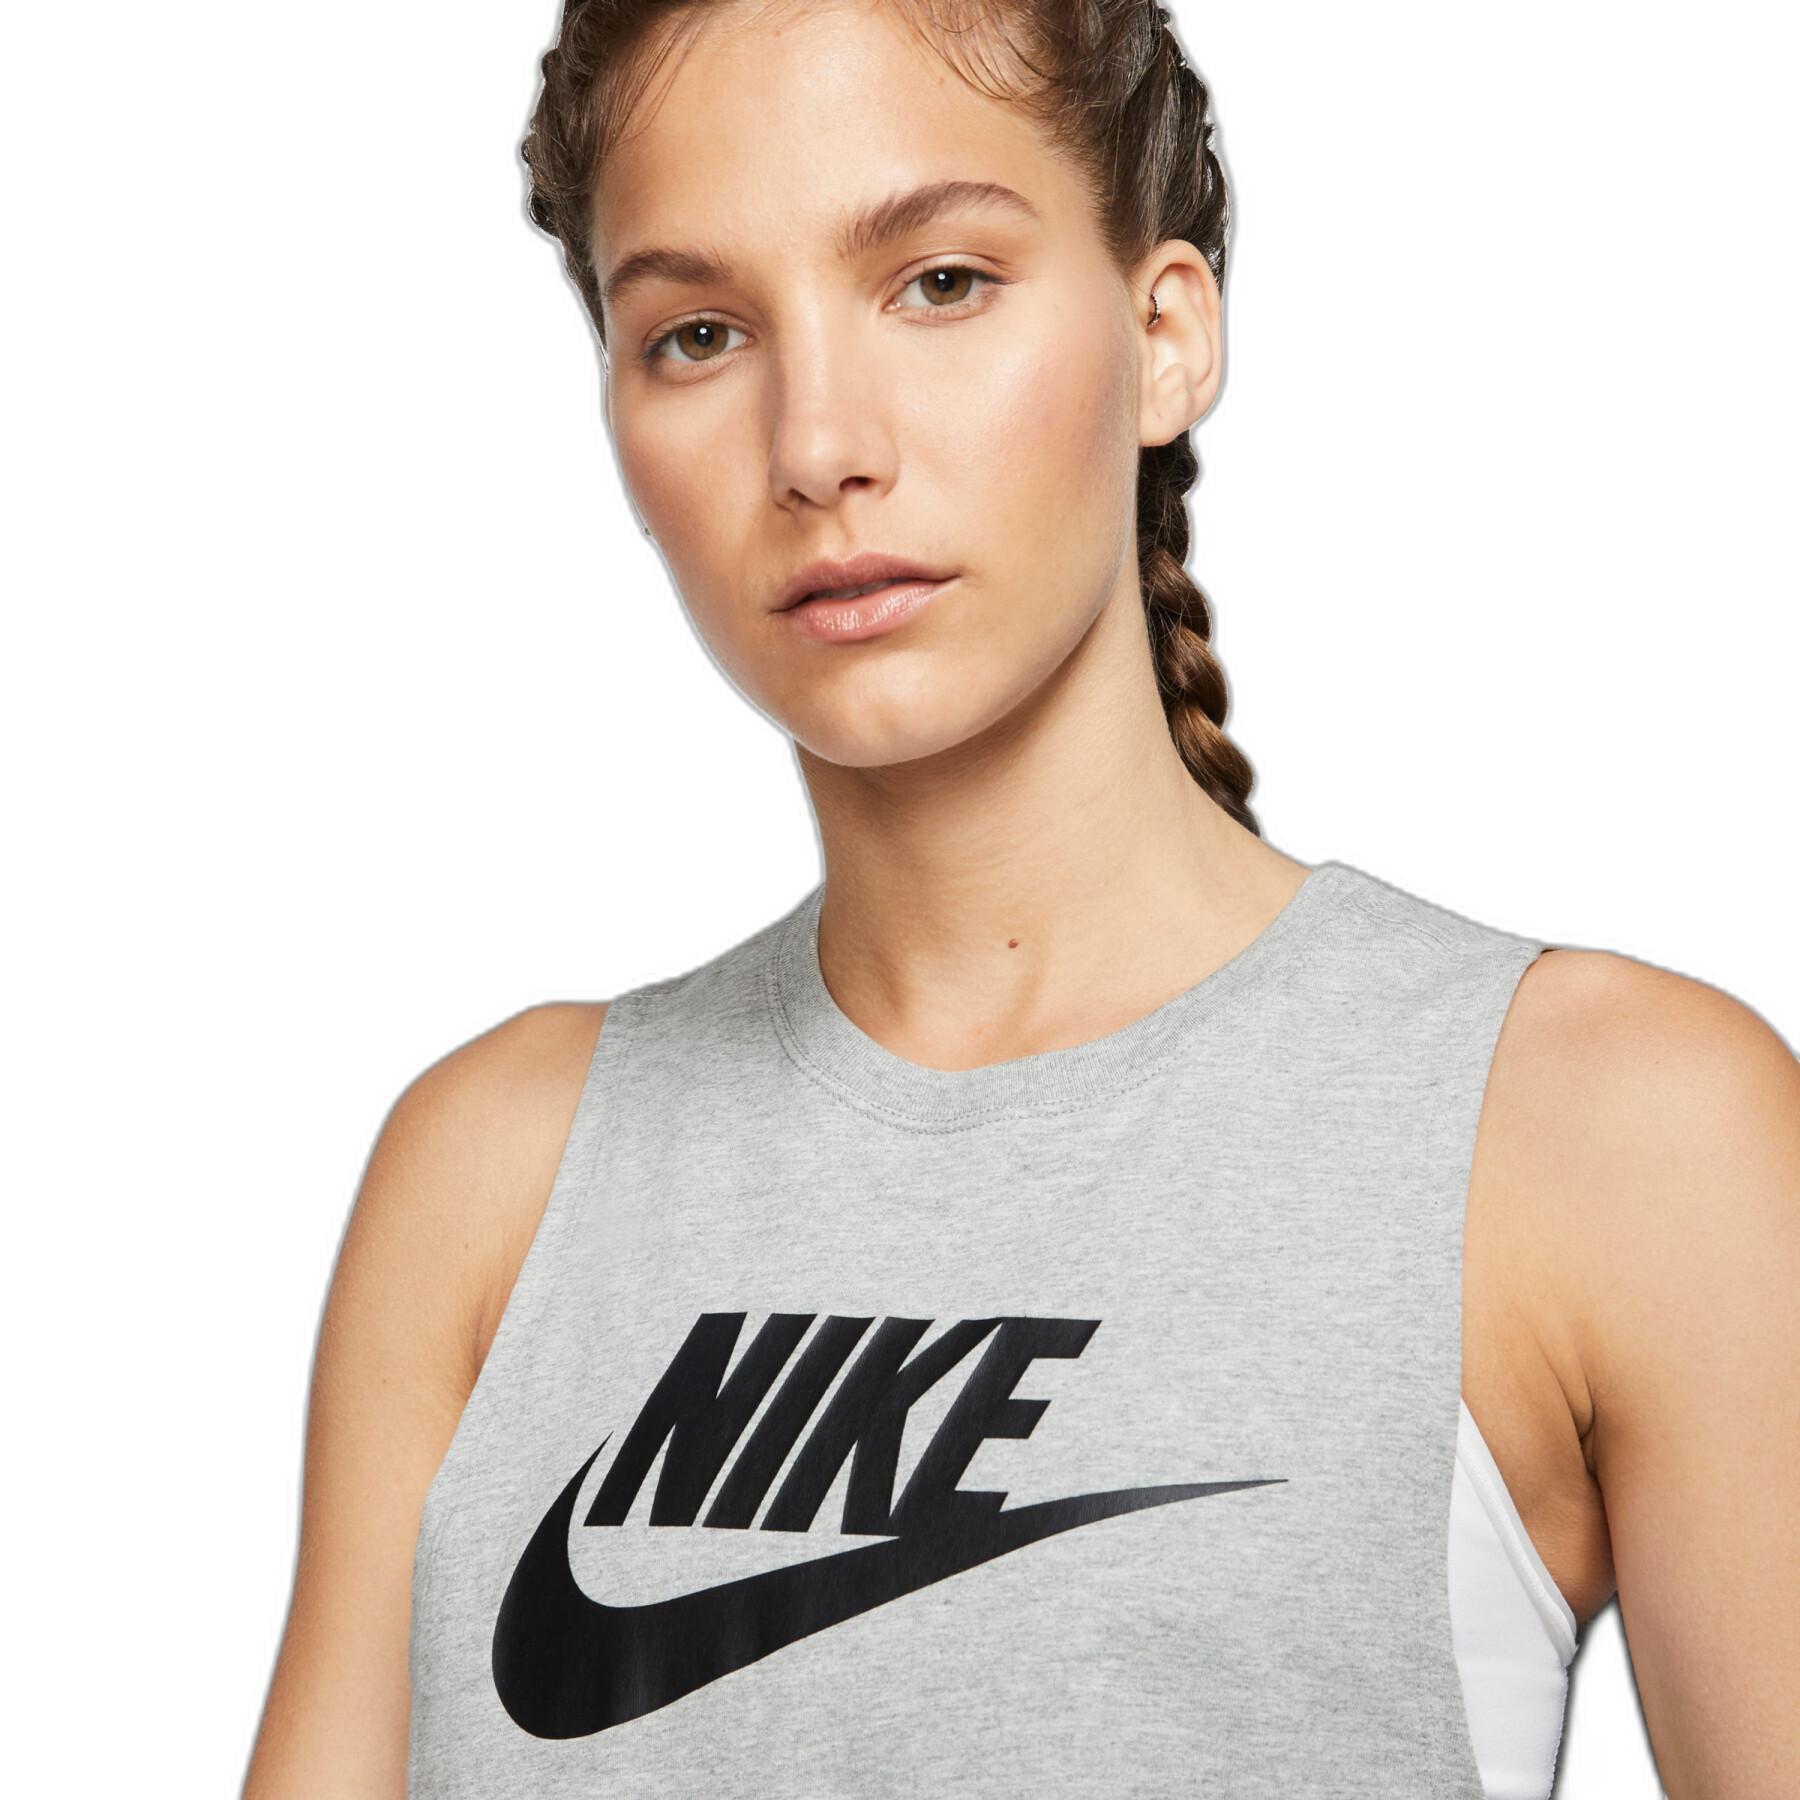 Damen-Top Nike Sportswear